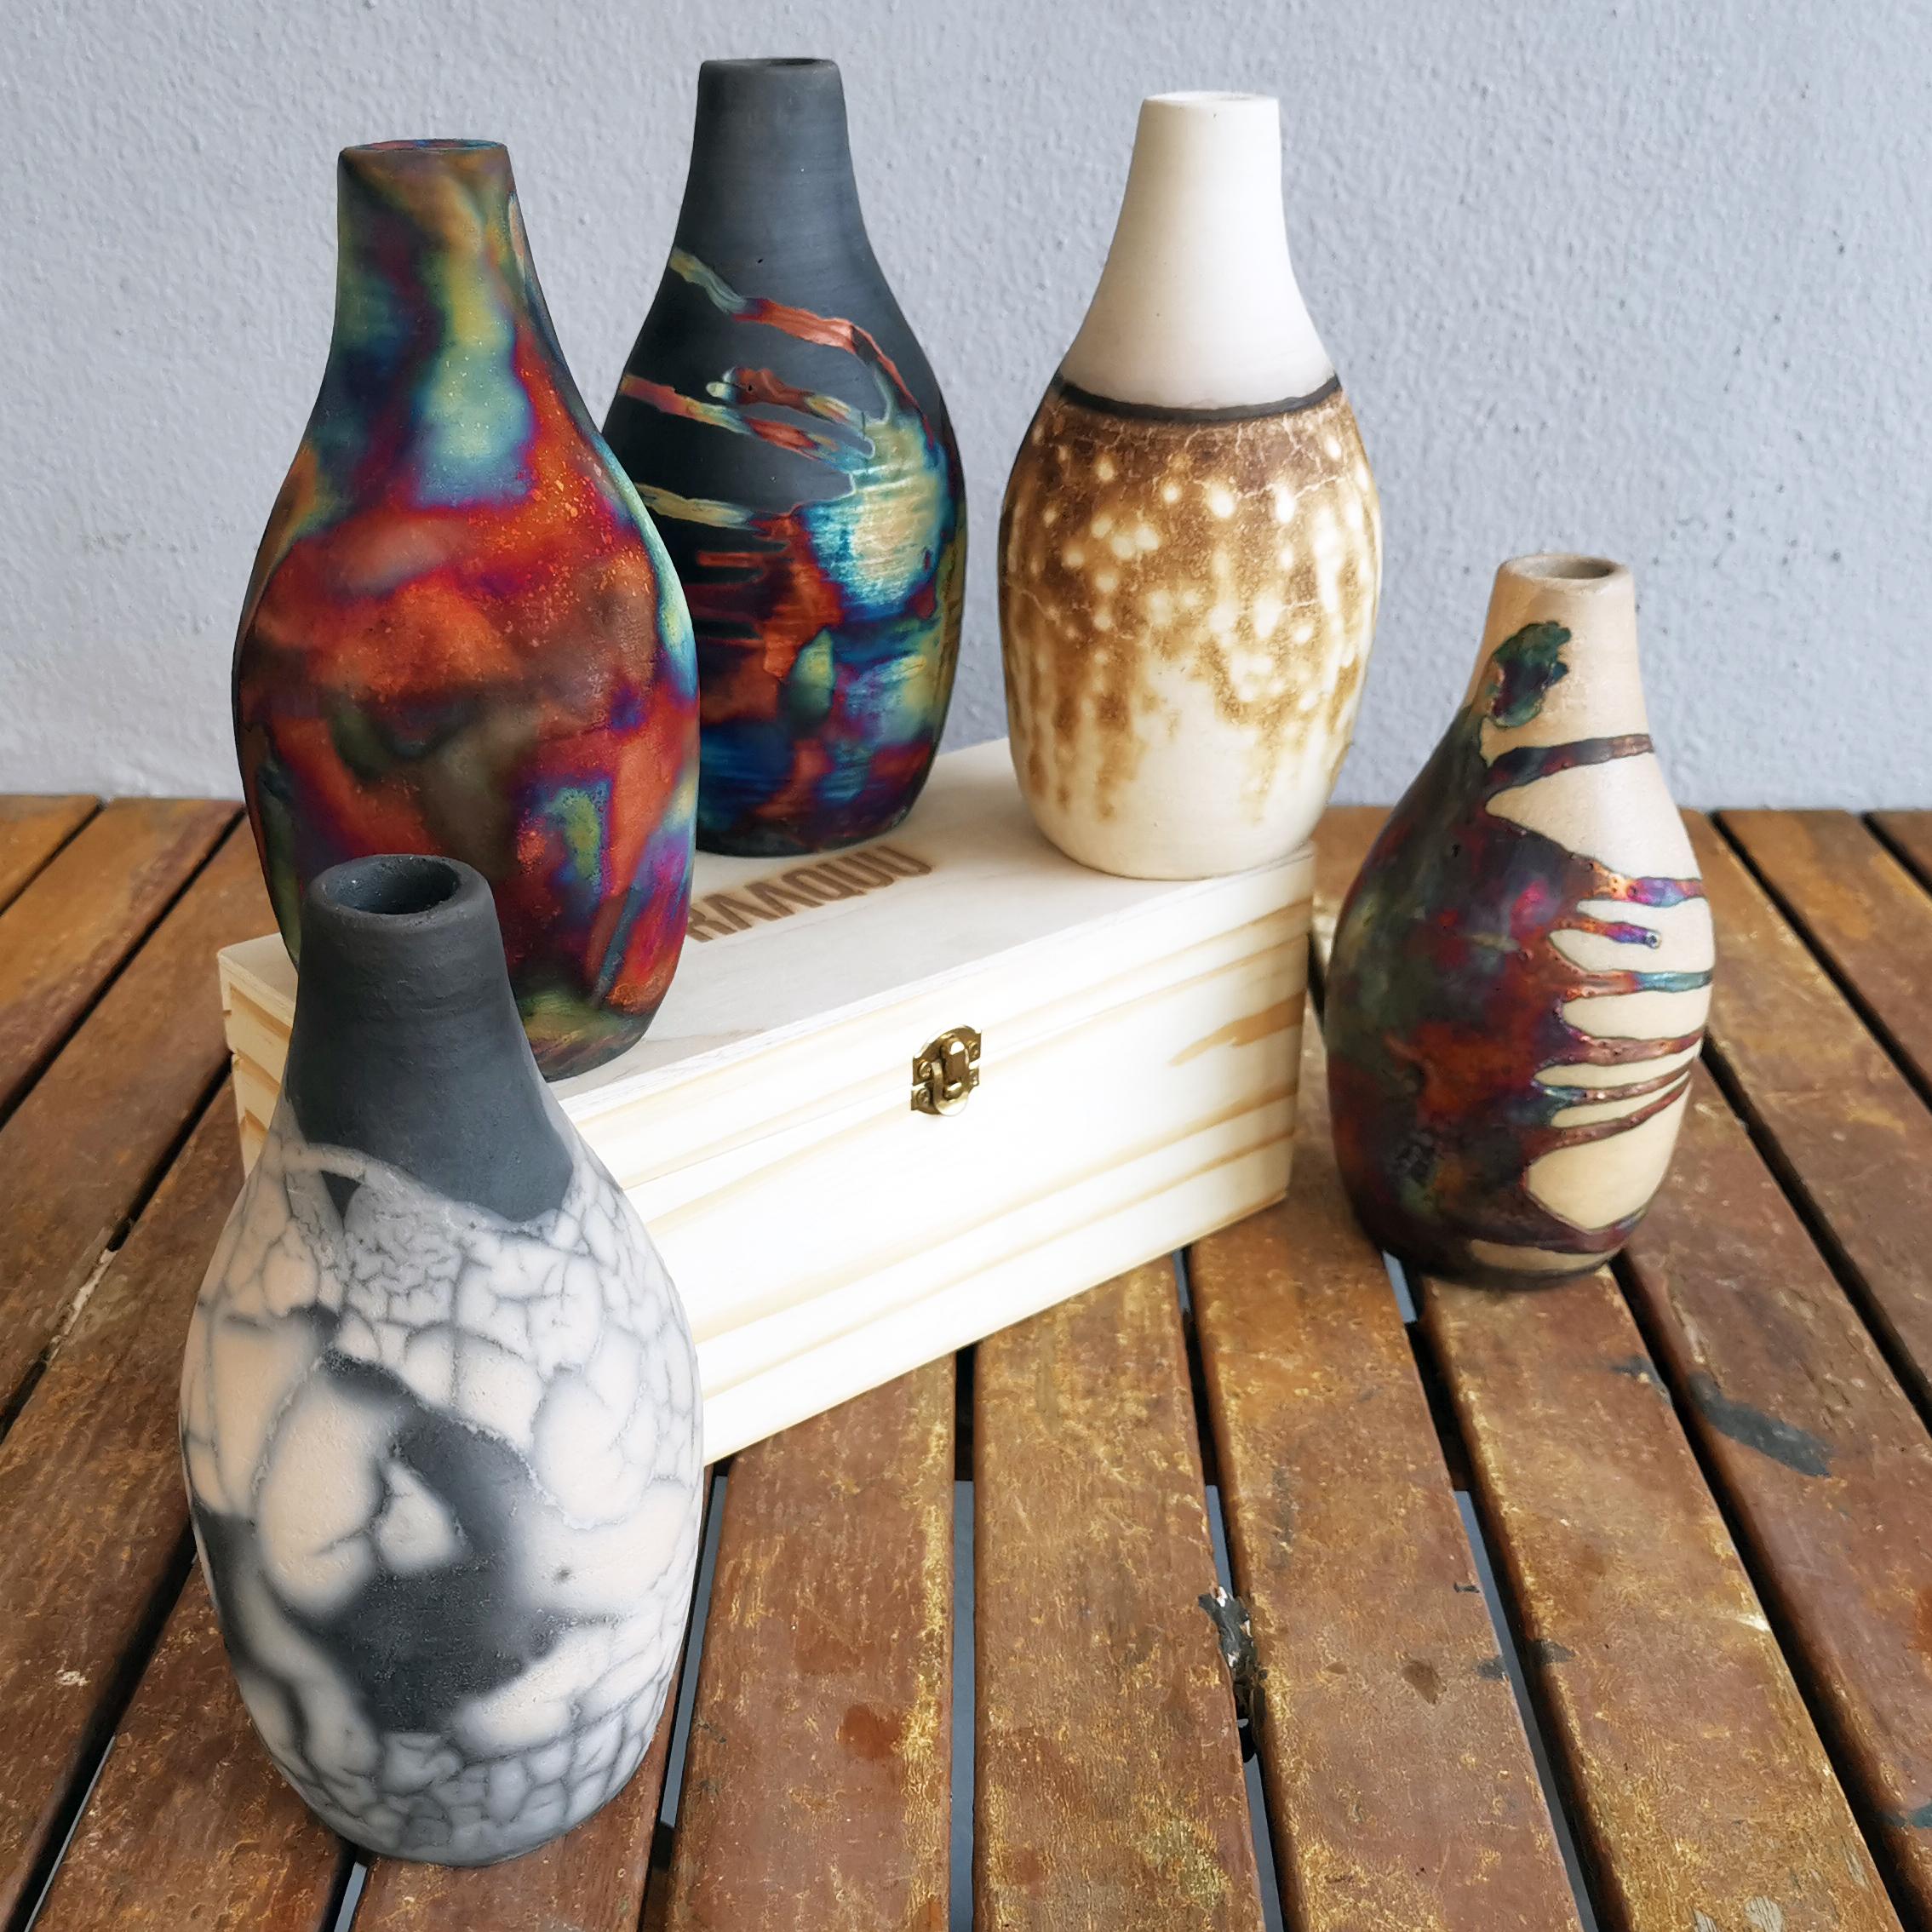 Es handelt sich um eine Geschenkverpackung und die Vase wird in einer Holzkiste aus Kiefernholz der Marke RAAQUU (9 x 5,1 x 5,1 cm) geliefert.

SIE ERHALTEN :
1 Vase in der ausgewählten Ausführung Ihrer Wahl in einer Holzkiste aus Kiefernholz mit